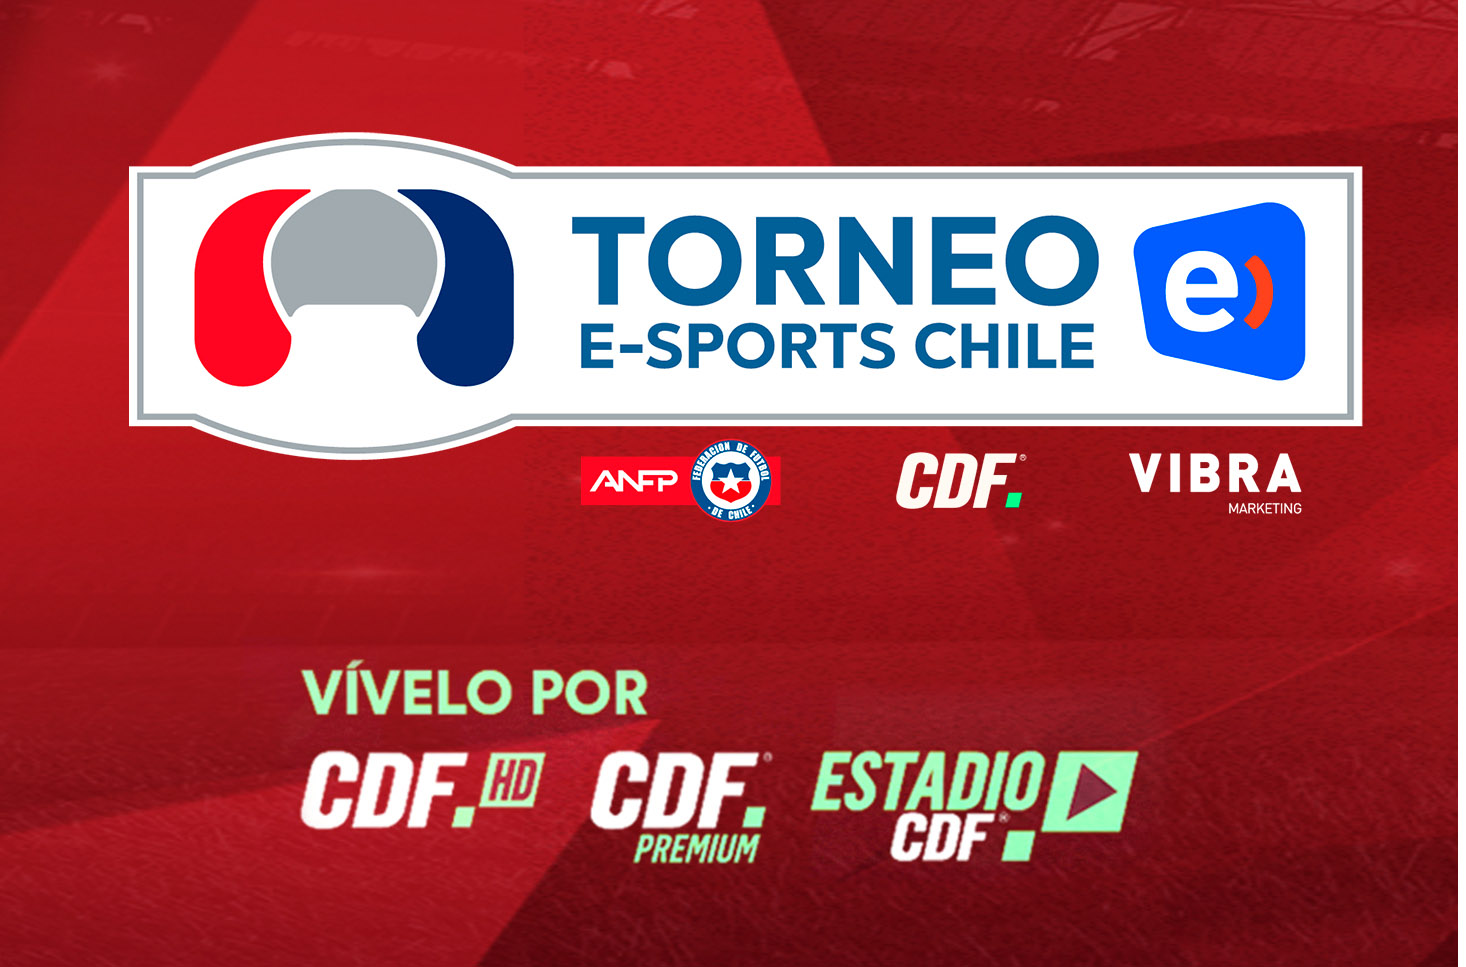 Conoce los jugadores que disputarán el Torneo Entel eSports Chile